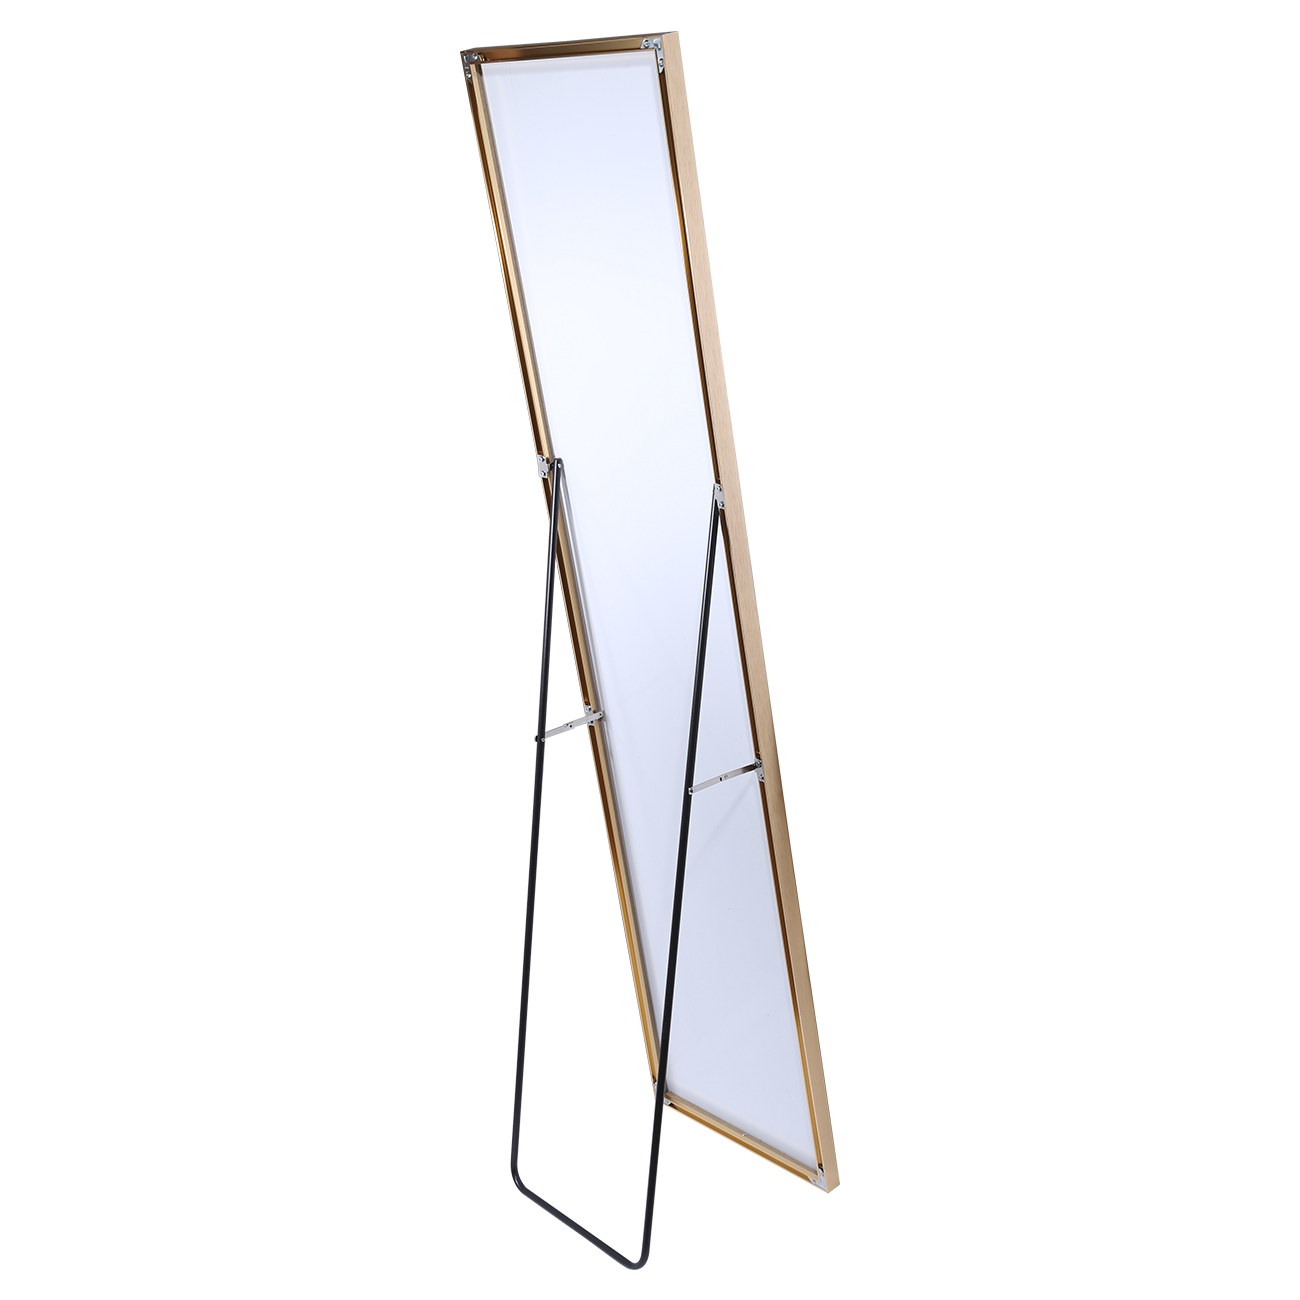 Floor mirror, 35x150 cm, metal, rectangular, golden, Trend изображение № 2